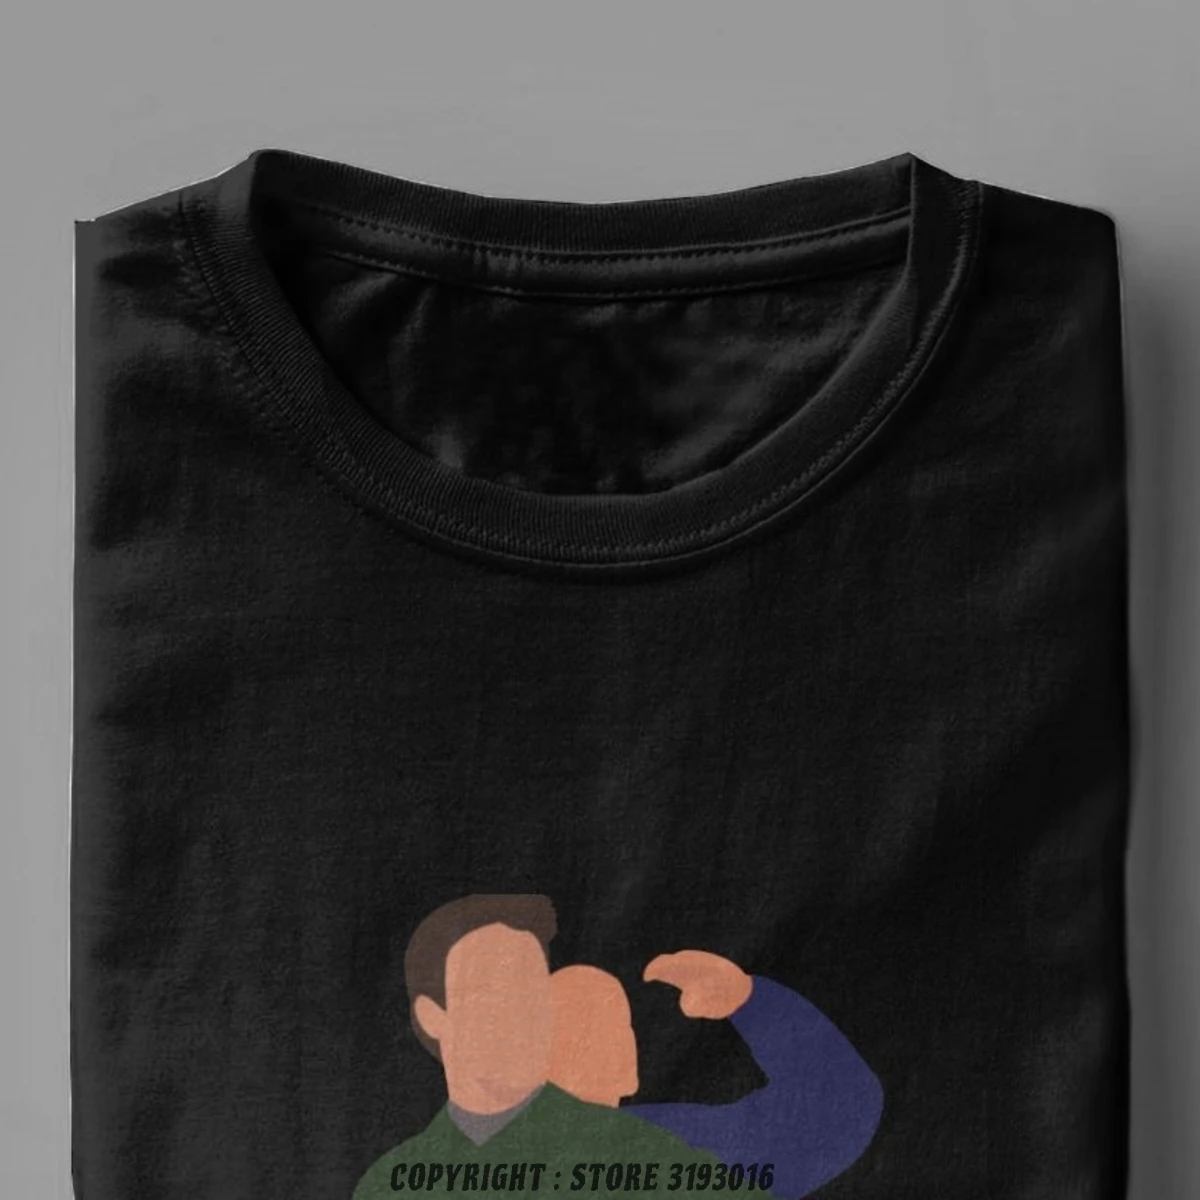 Футболка Chanoey Friends забавная Мужская футболка с рисунком Моники и Джоуи Чендлера